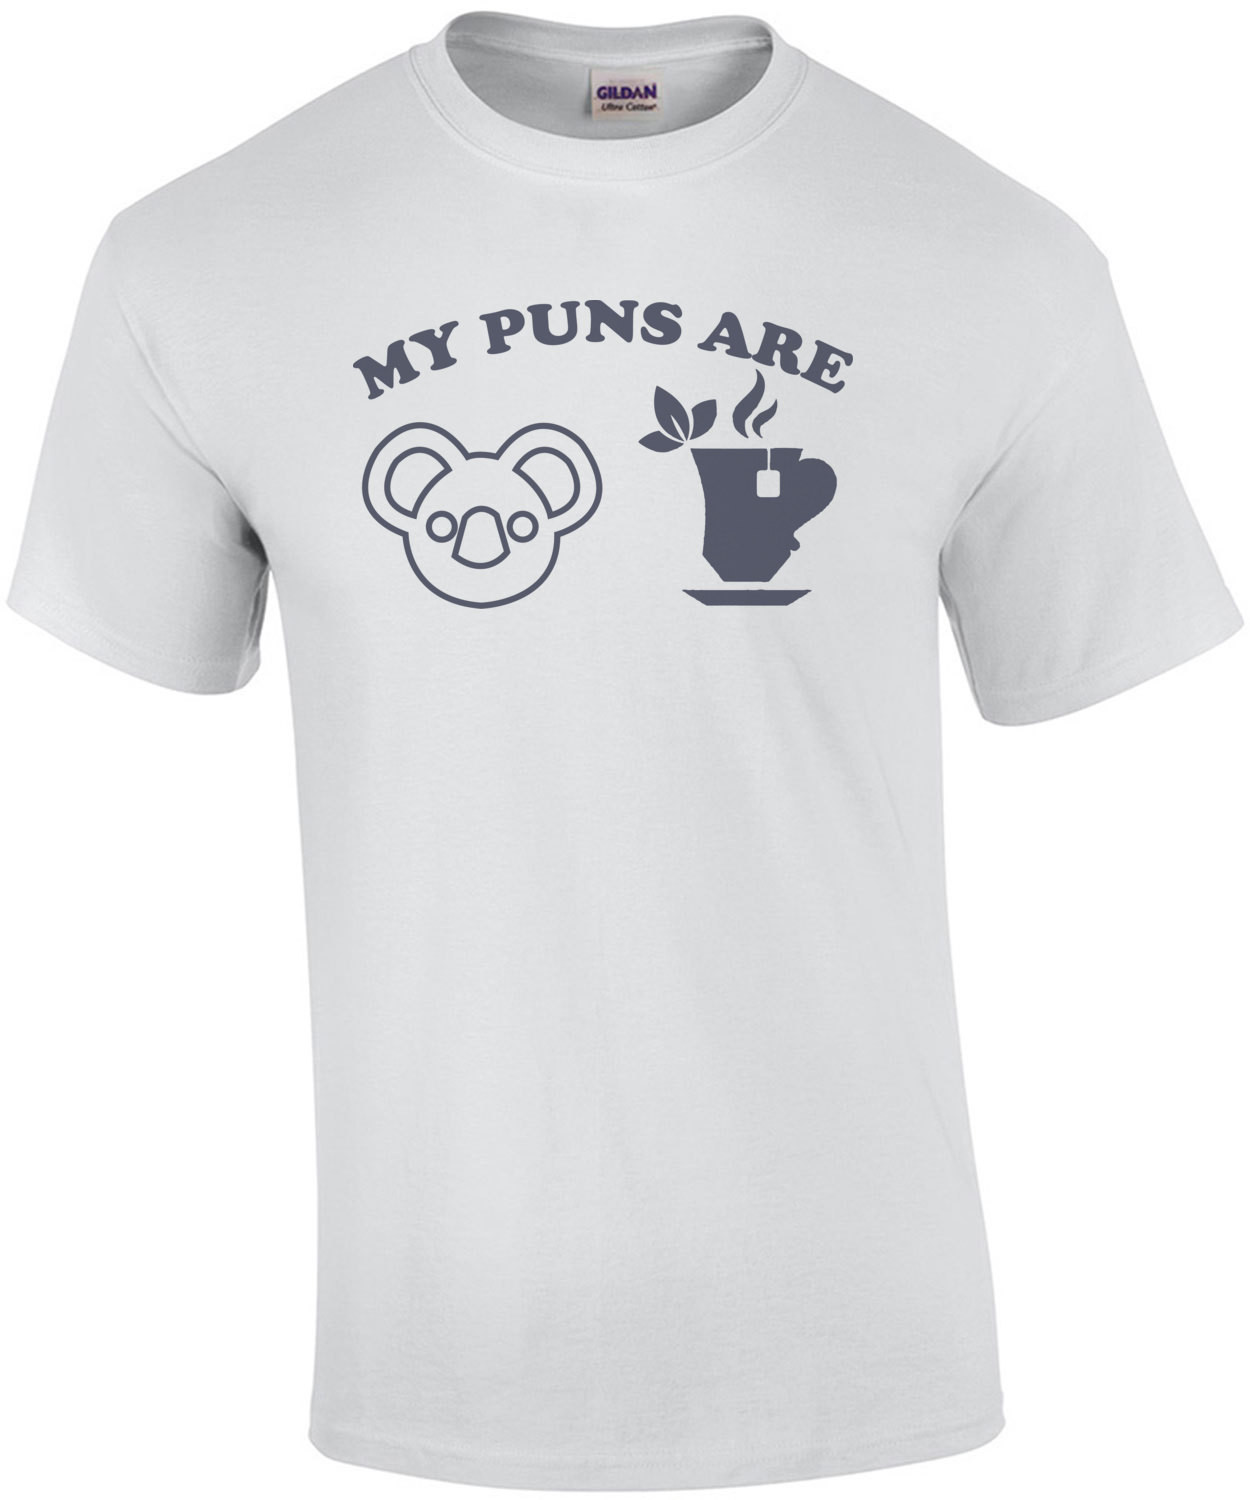 My puns are Koala Tea - Funny Pun